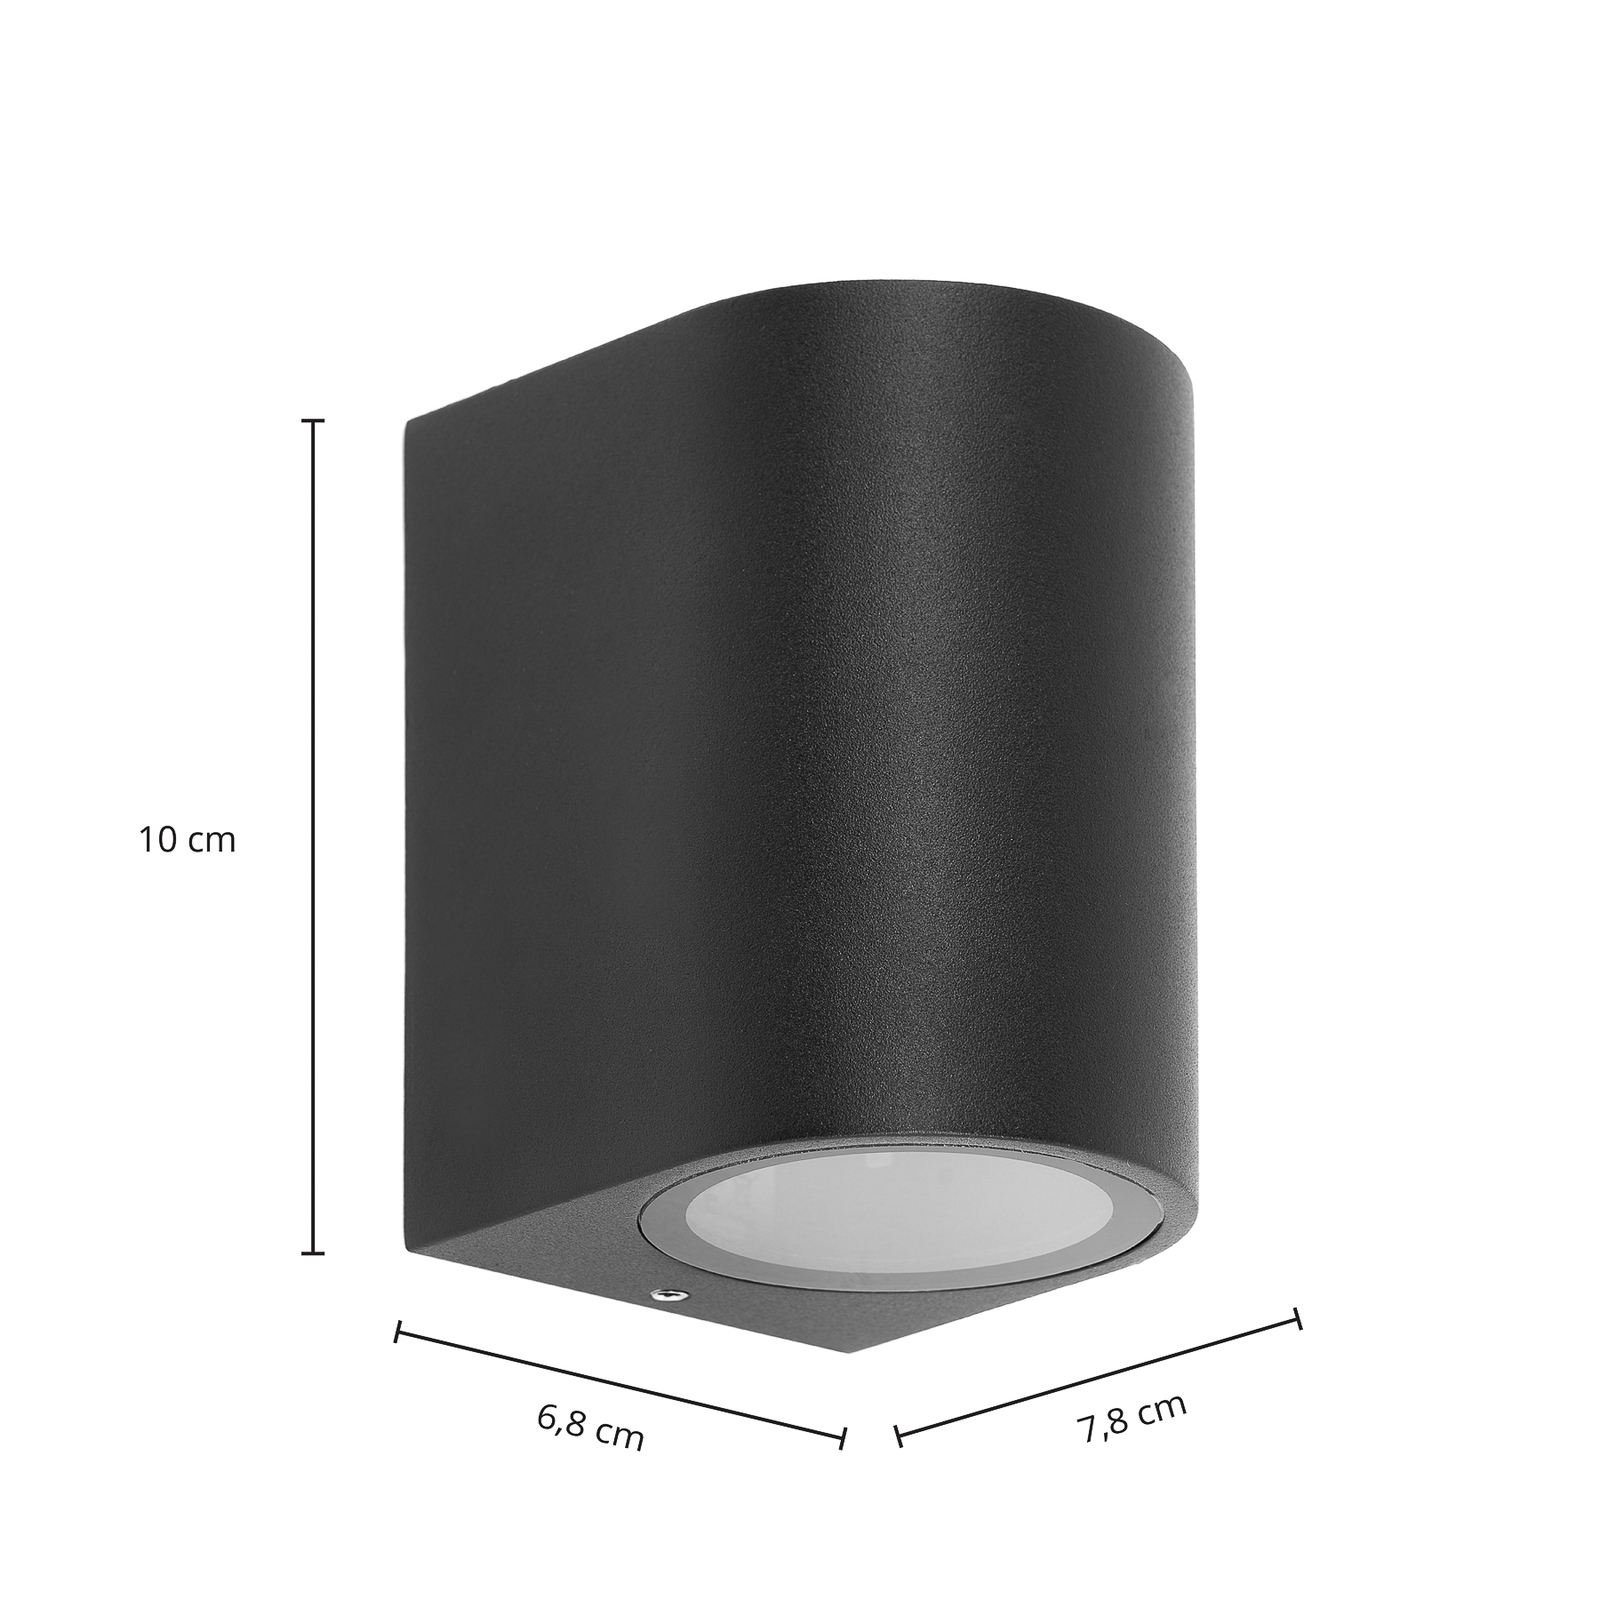 Prios kültéri fali lámpa Tetje, fekete, kerek, 10 cm, 4 darabos szett